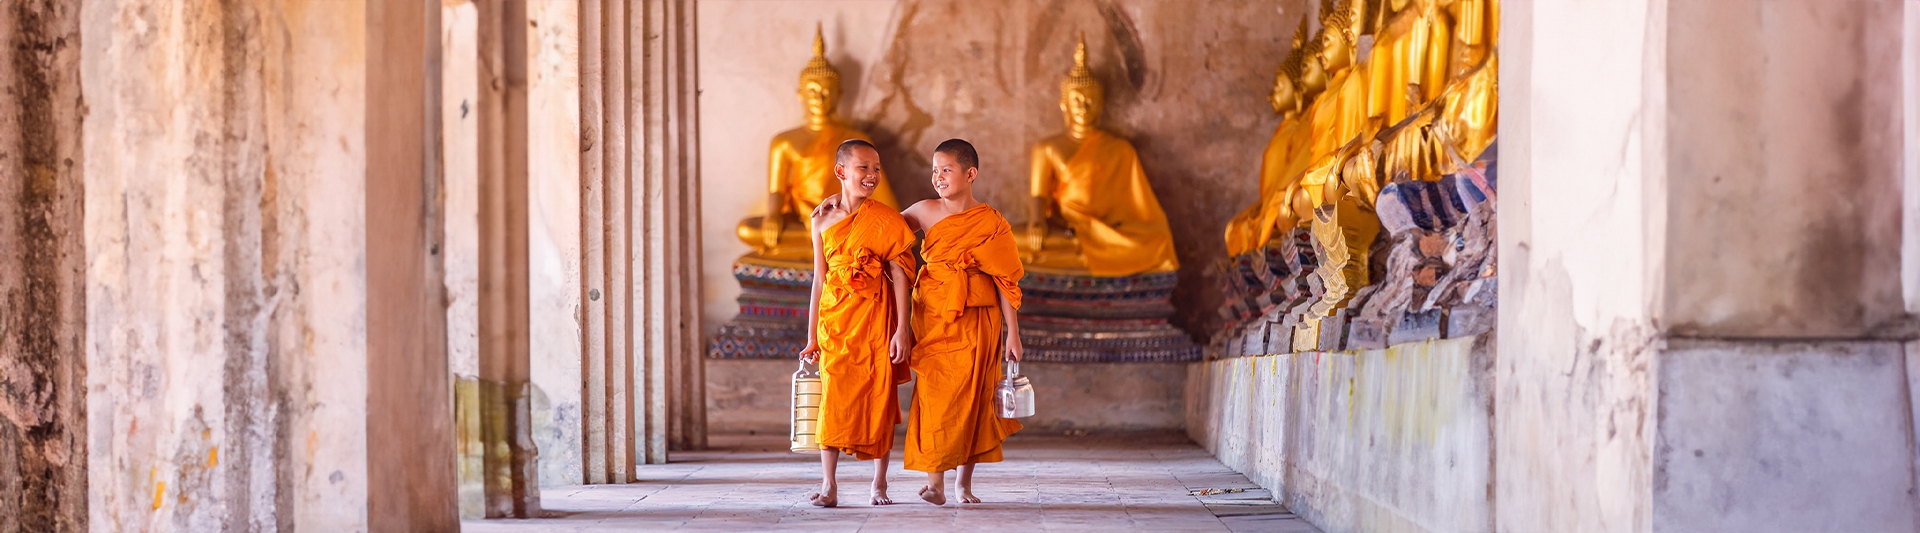 Voyage sur mesure Laos